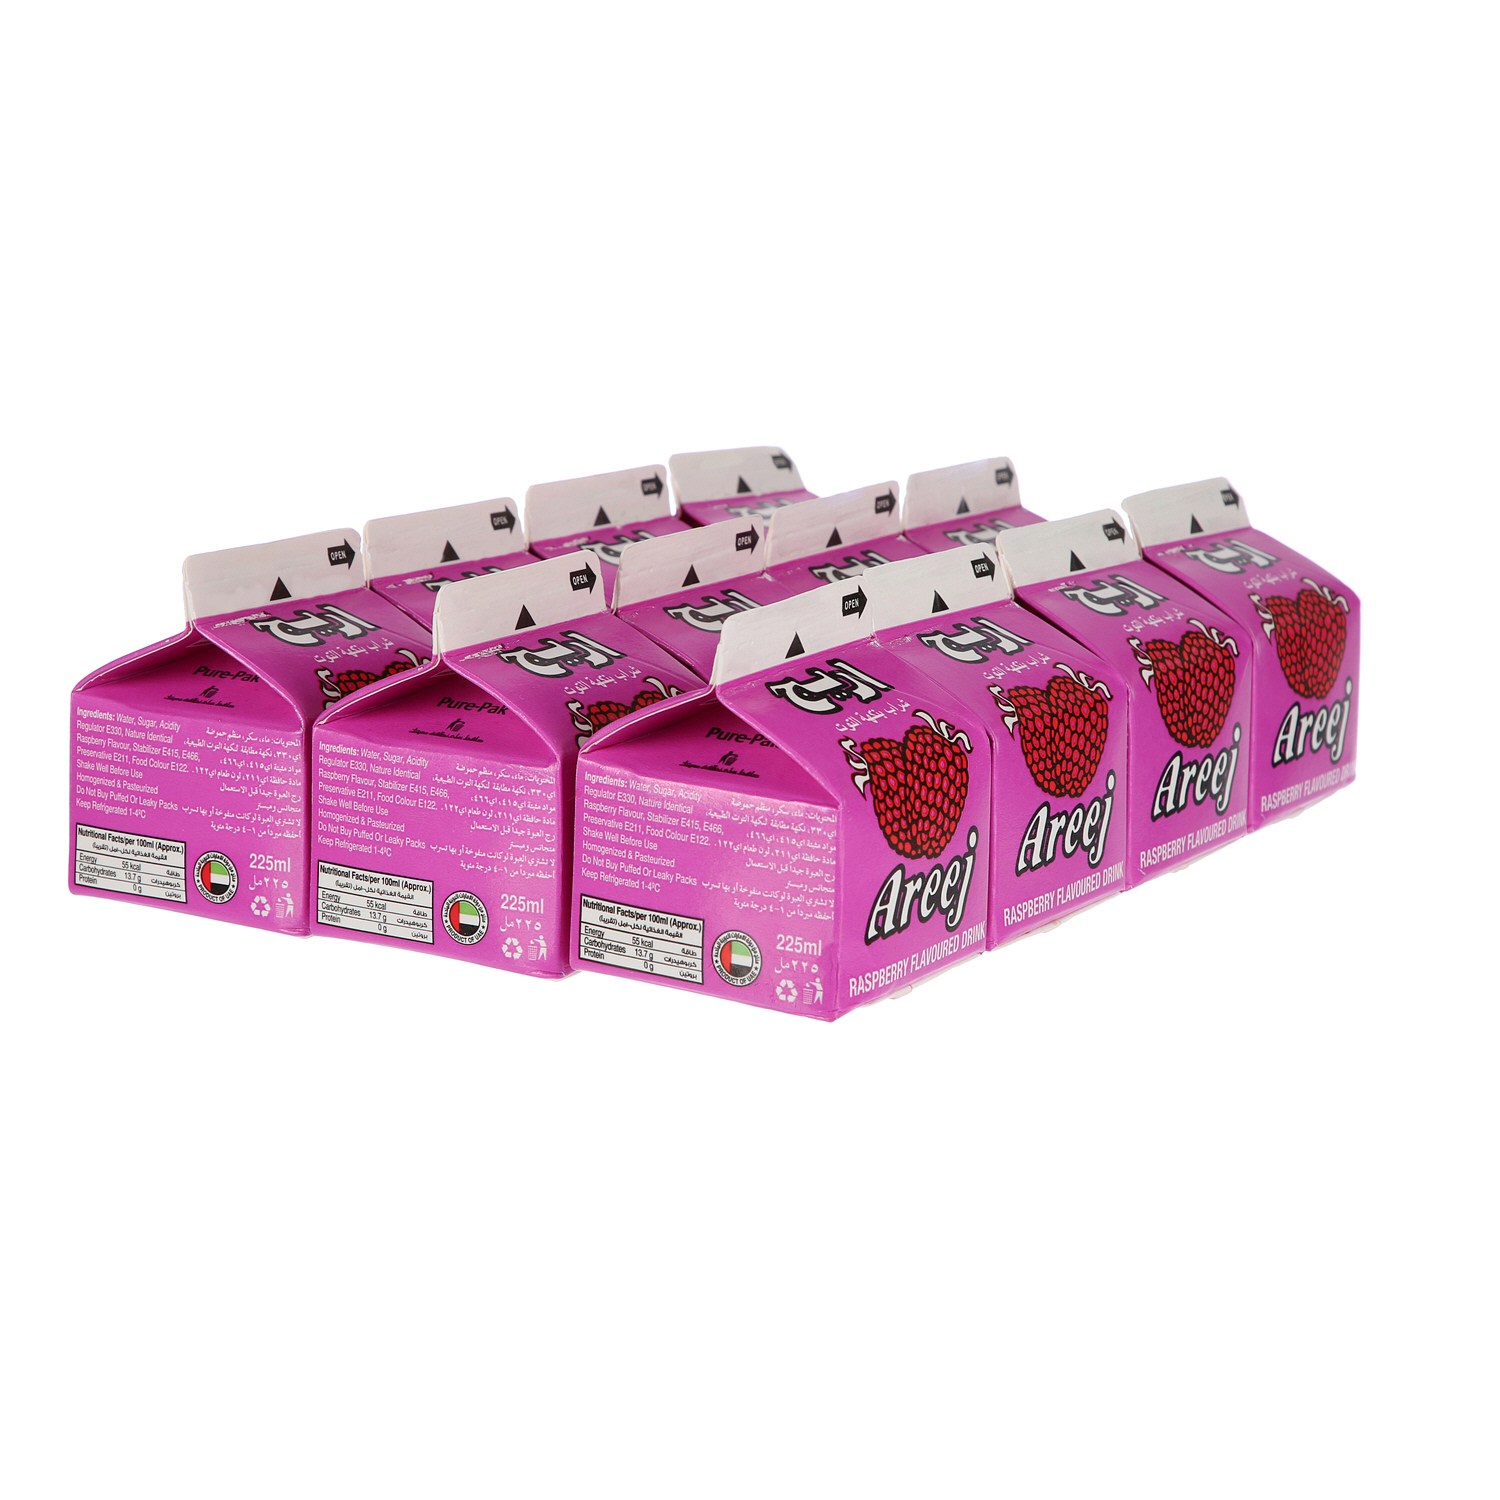 Areej Juice Raspberry 225 ml × 12 Pack